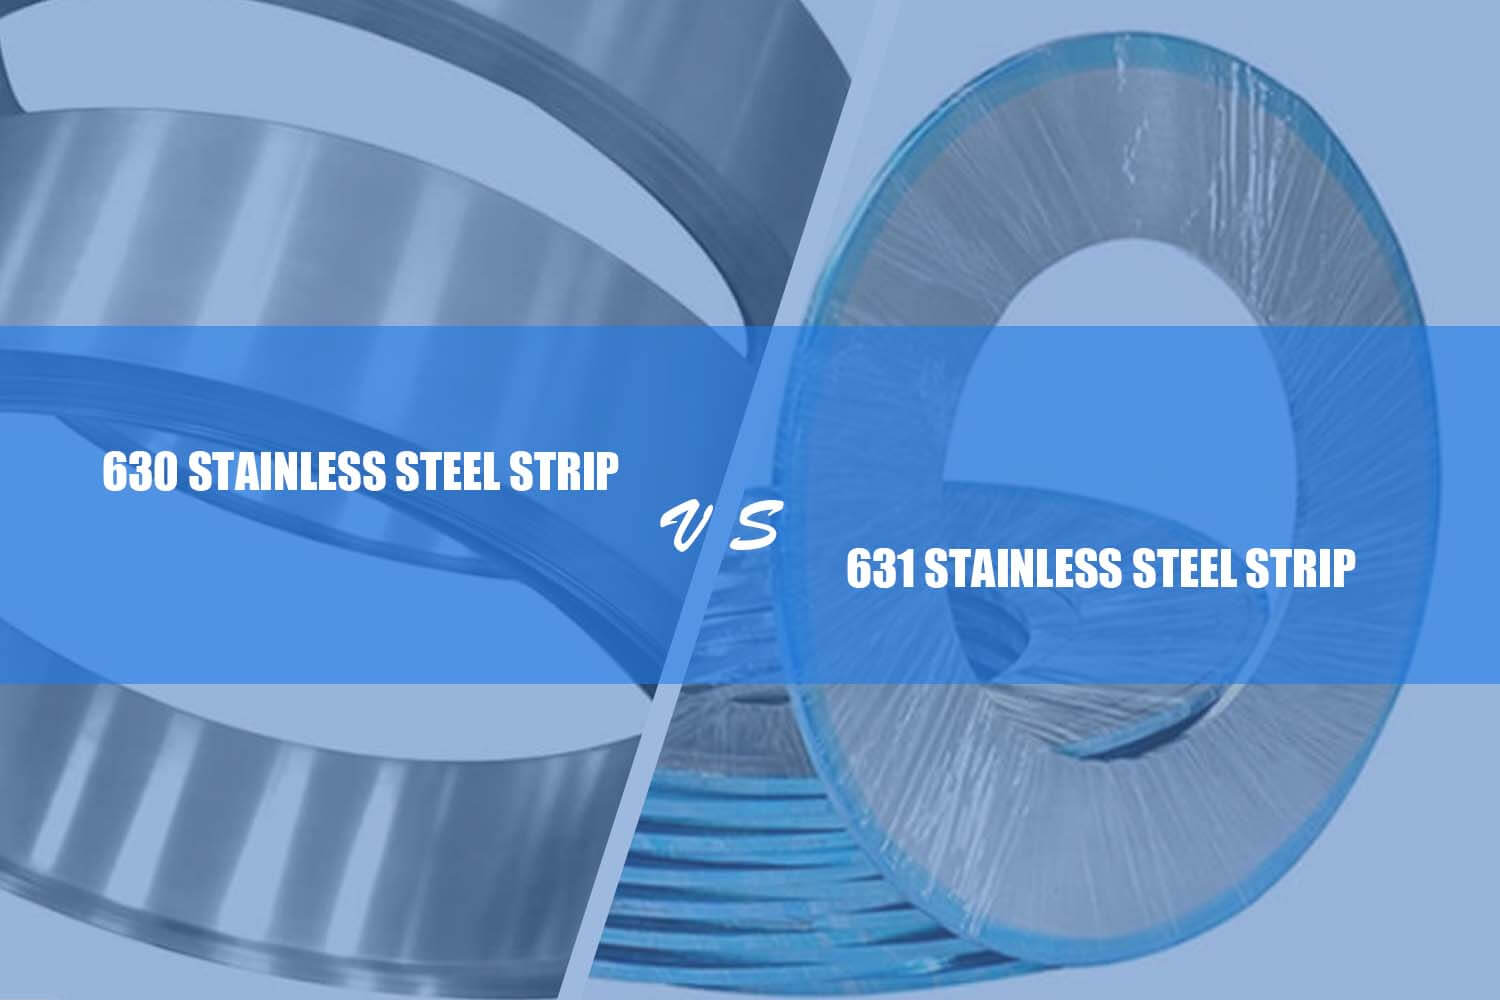 difference between 630 vlekvrye staal strook en 631 vlekvrye staal strook